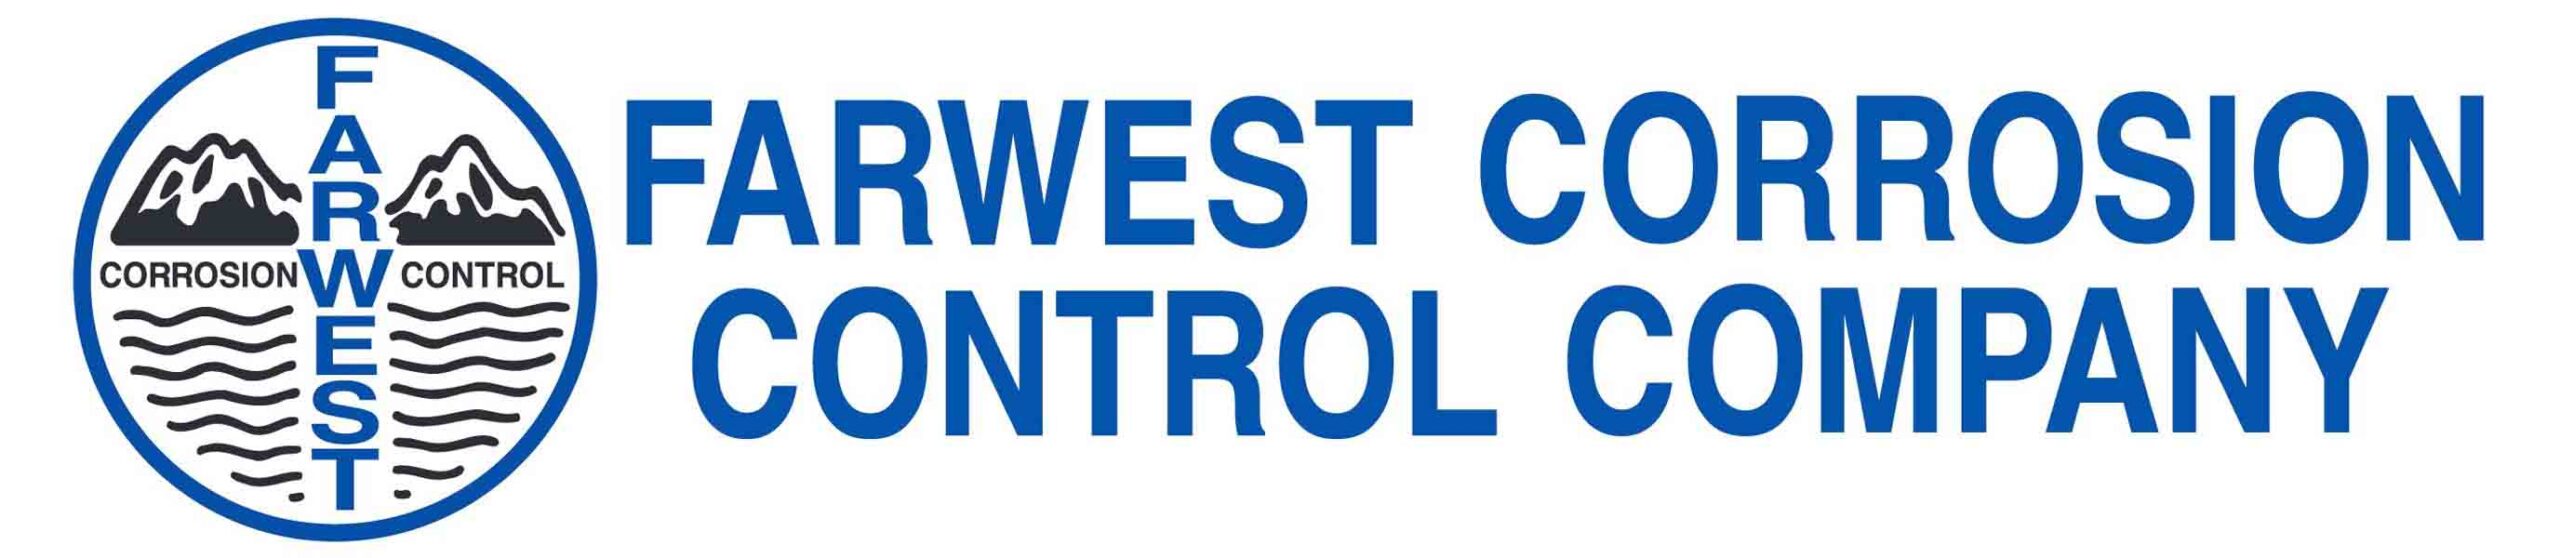 Farwest corrosion control logo